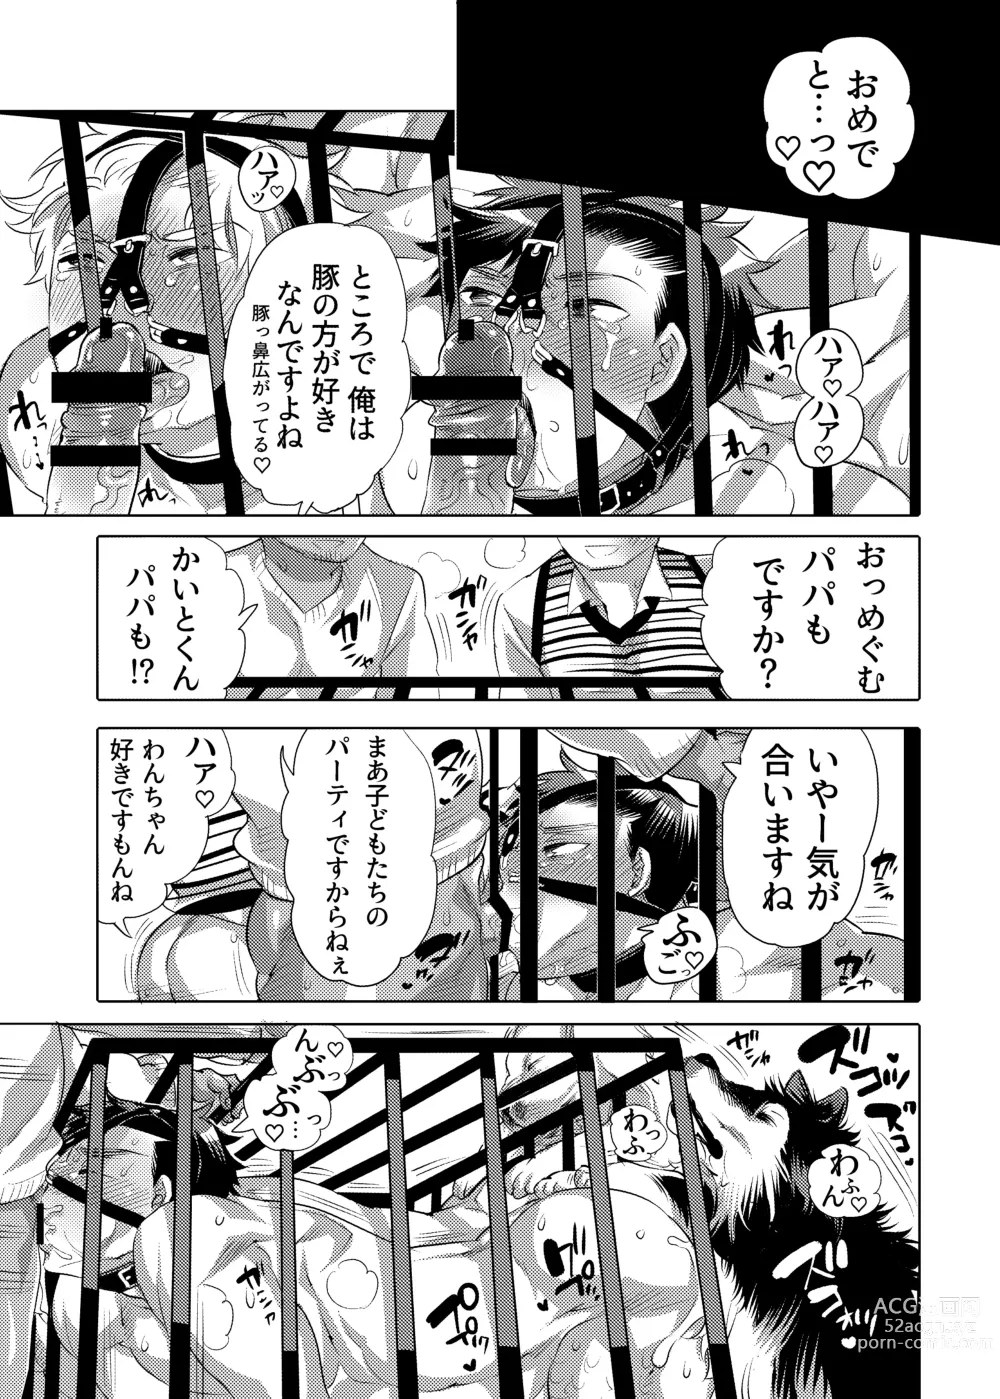 Page 41 of doujinshi Bokura no Shori Ana Wanko-kun